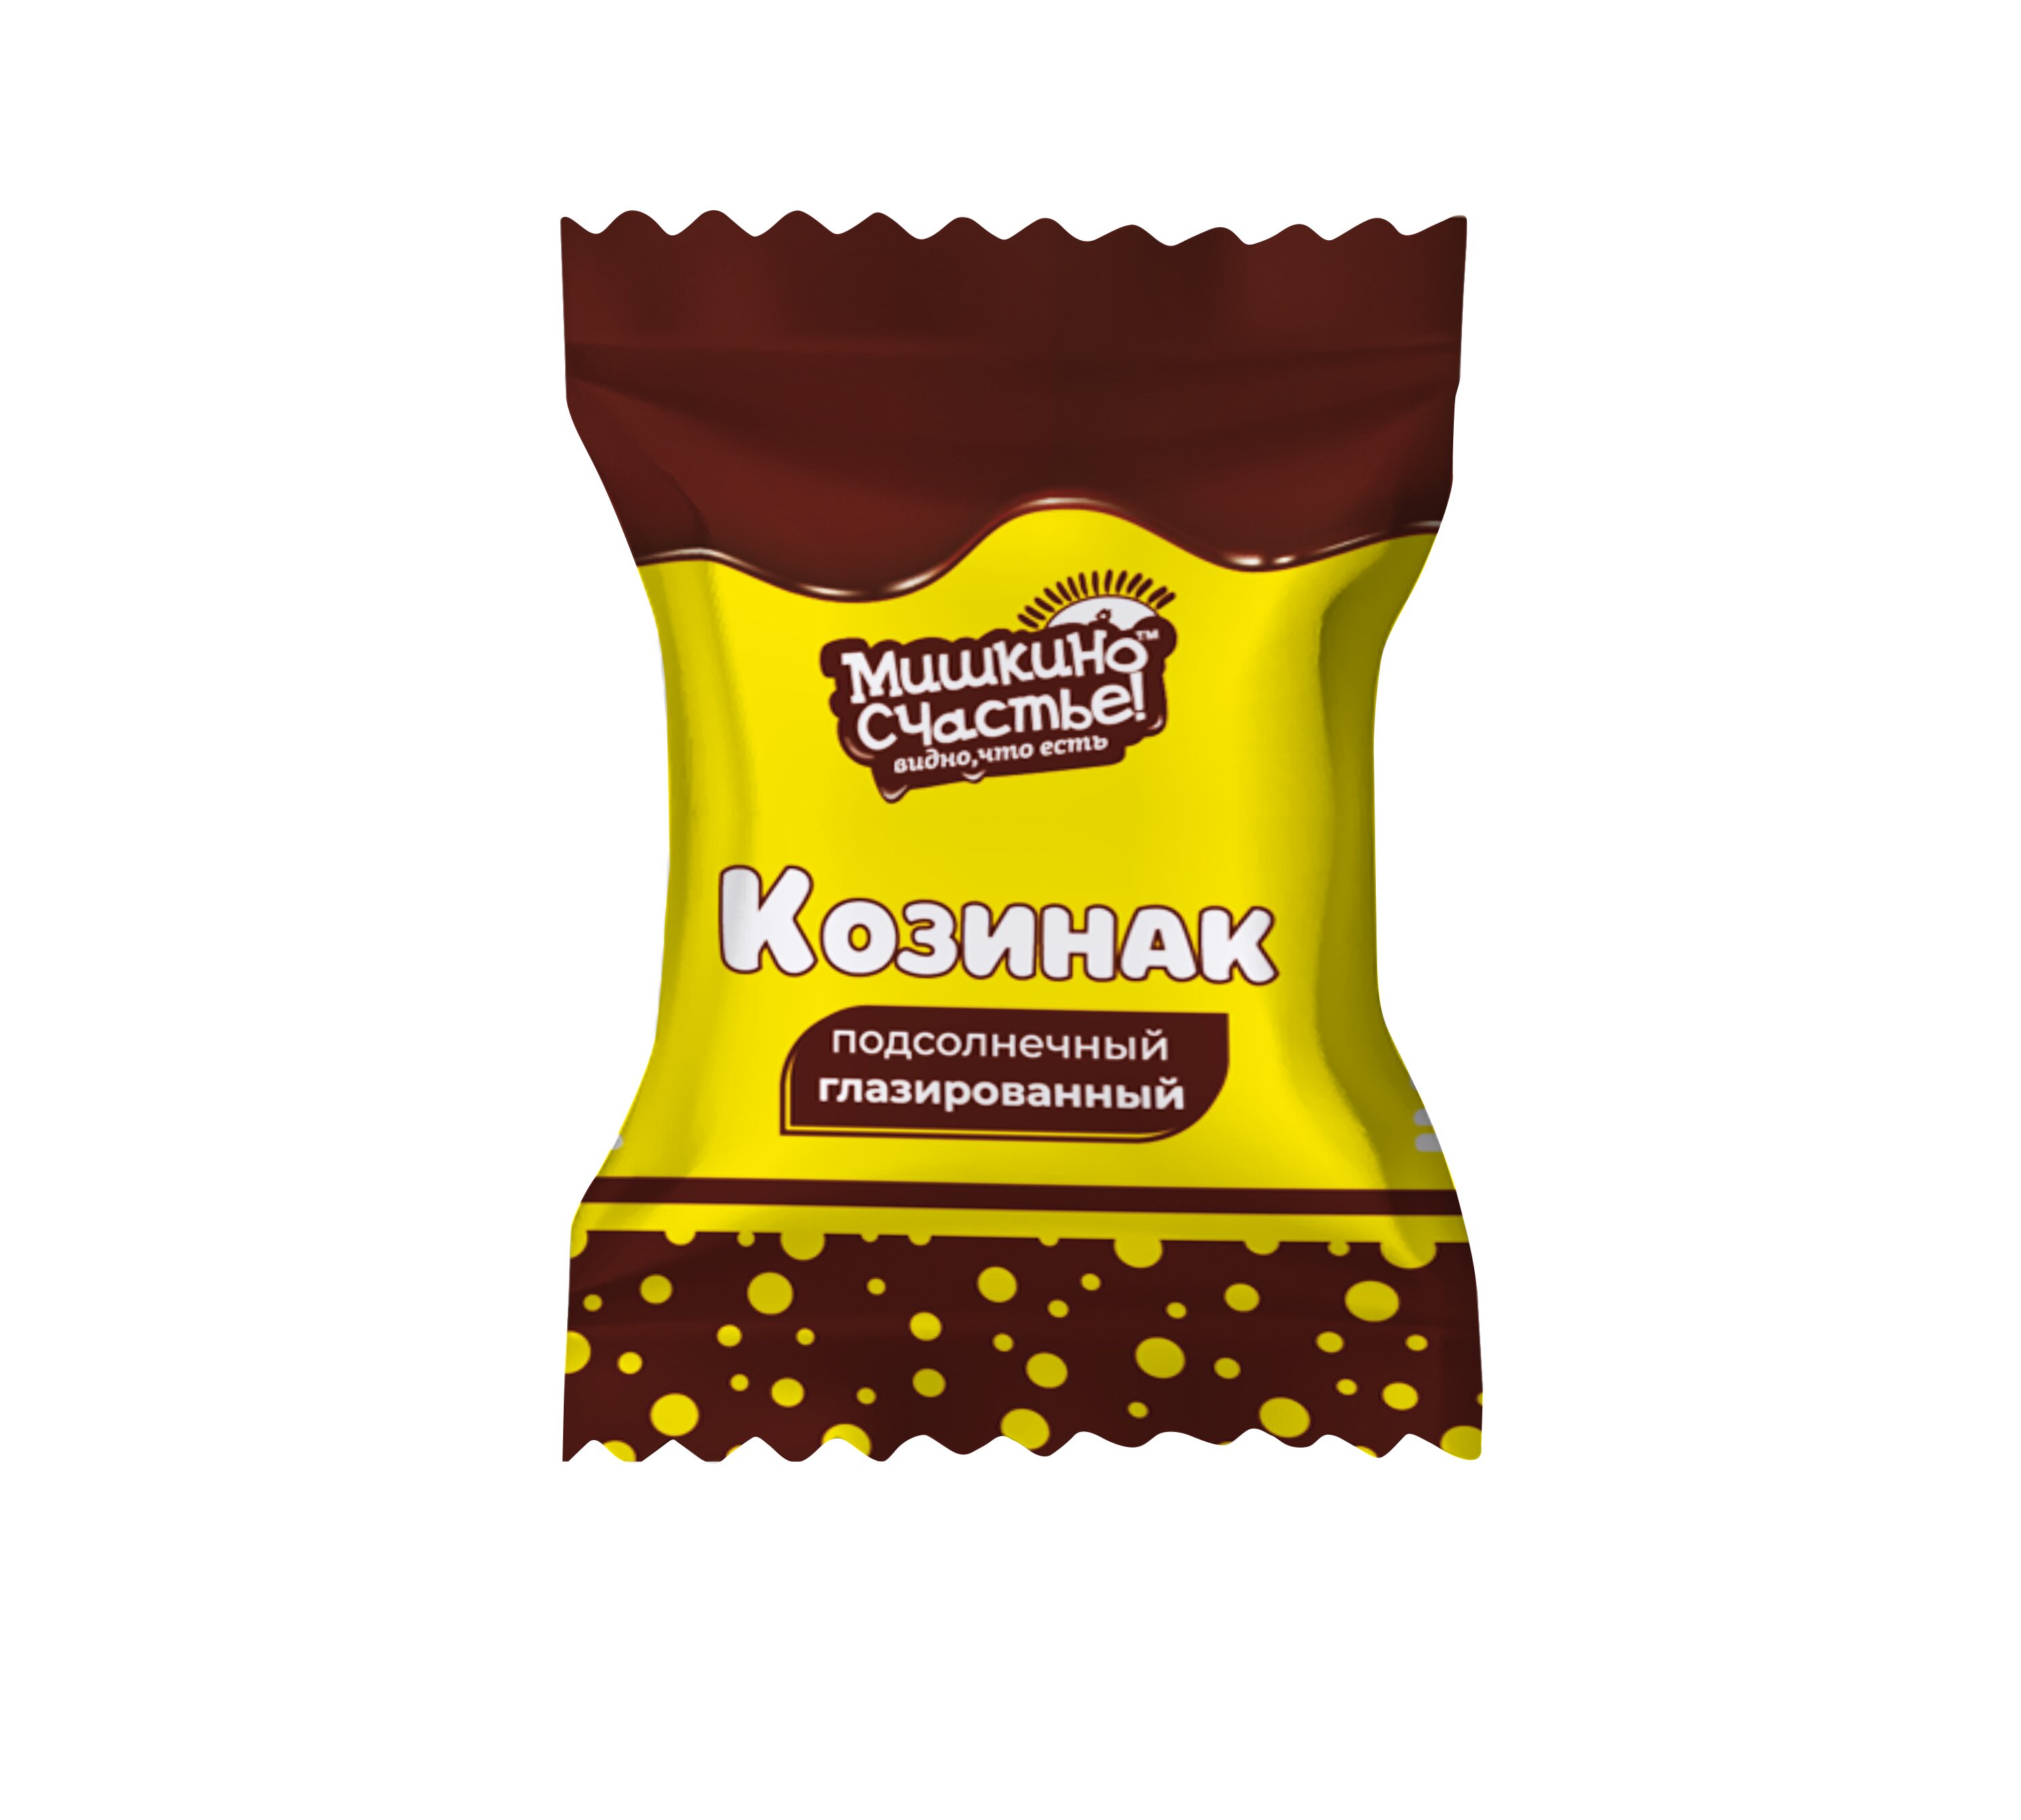 Конфеты Козинак подсолнечный глазированный "Мишкино счастье" 3кг, 3 кг.